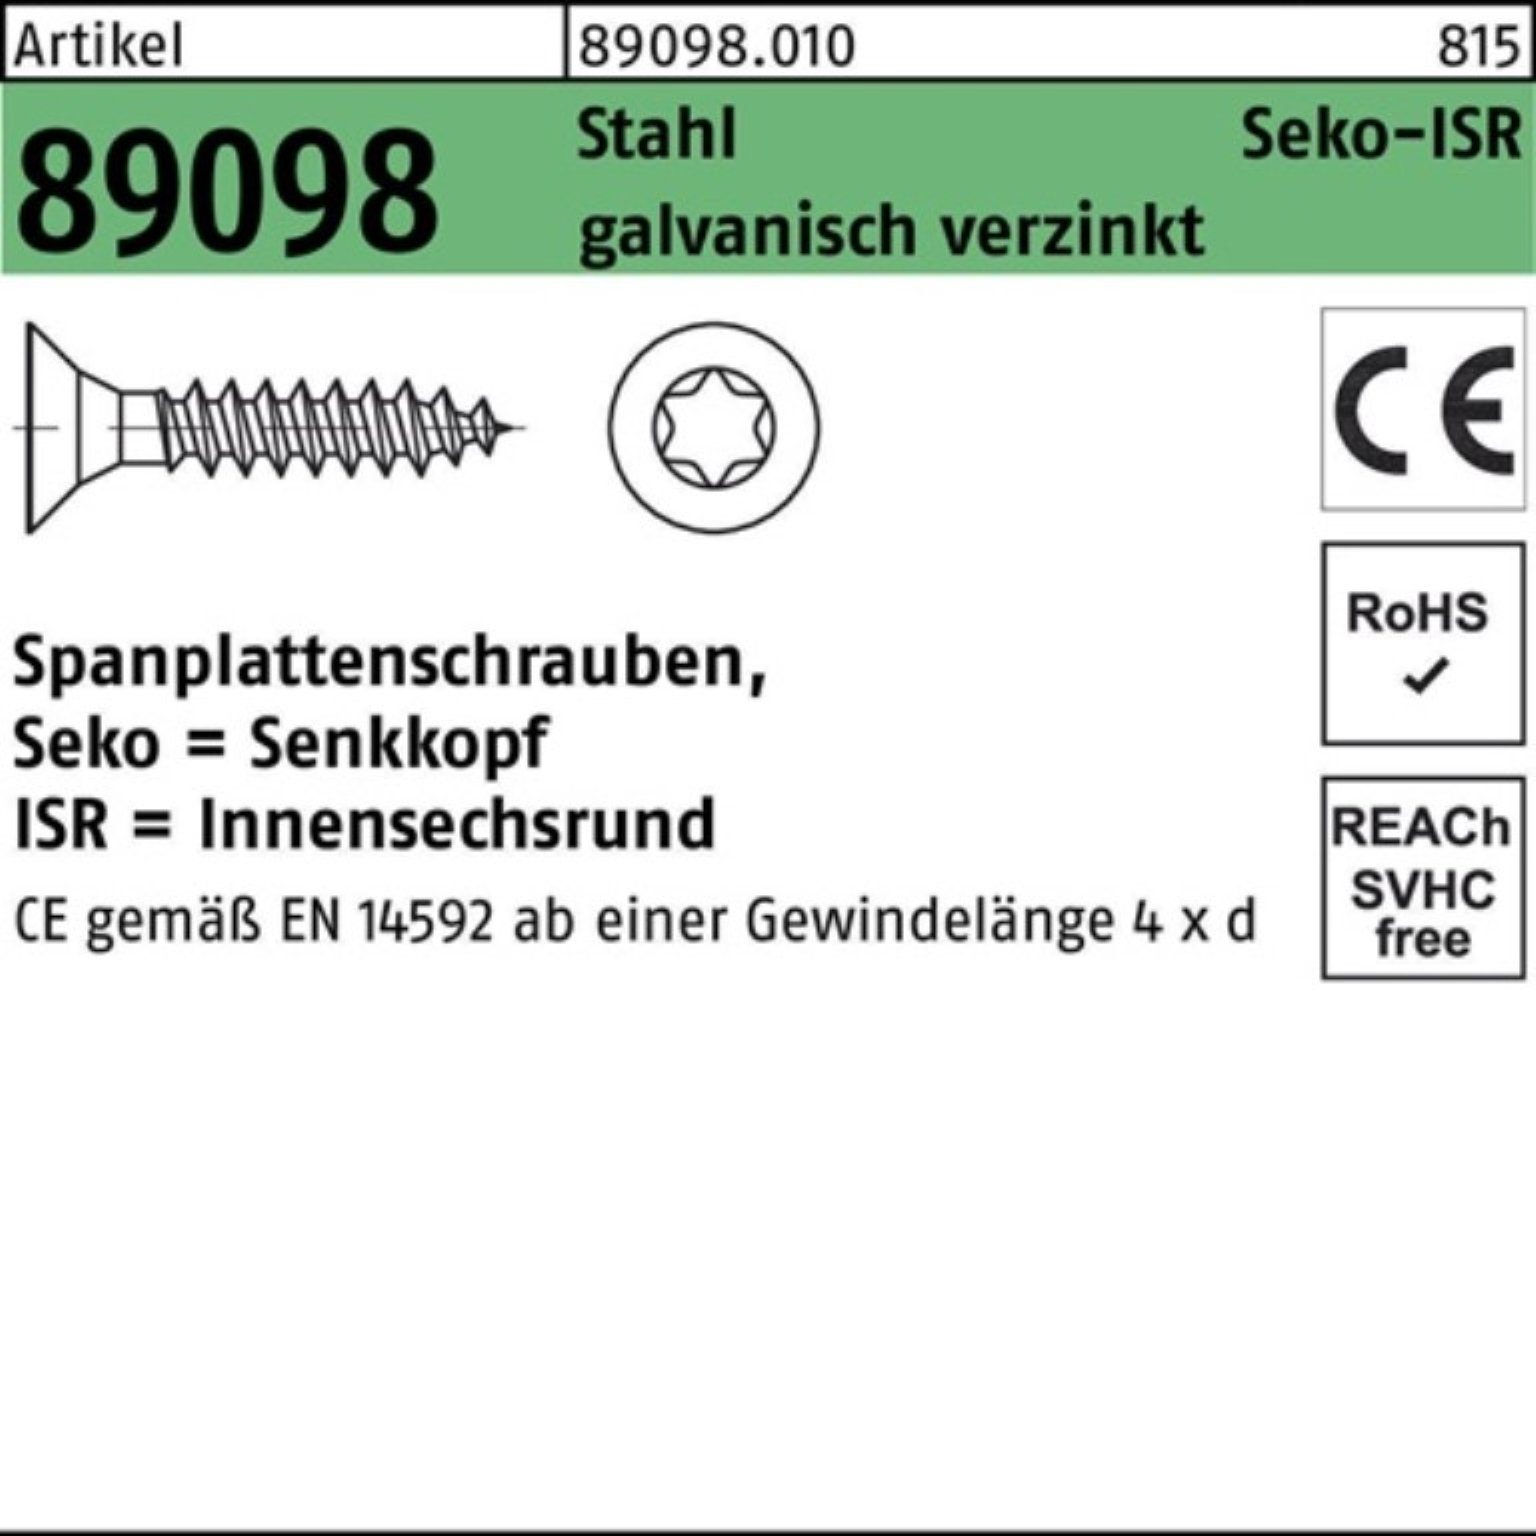 Stahl 89098 gal 4x20-T20 Reyher Spanplattenschraube SEKO ISR 1000er VG Pack R Spanplattenschraube